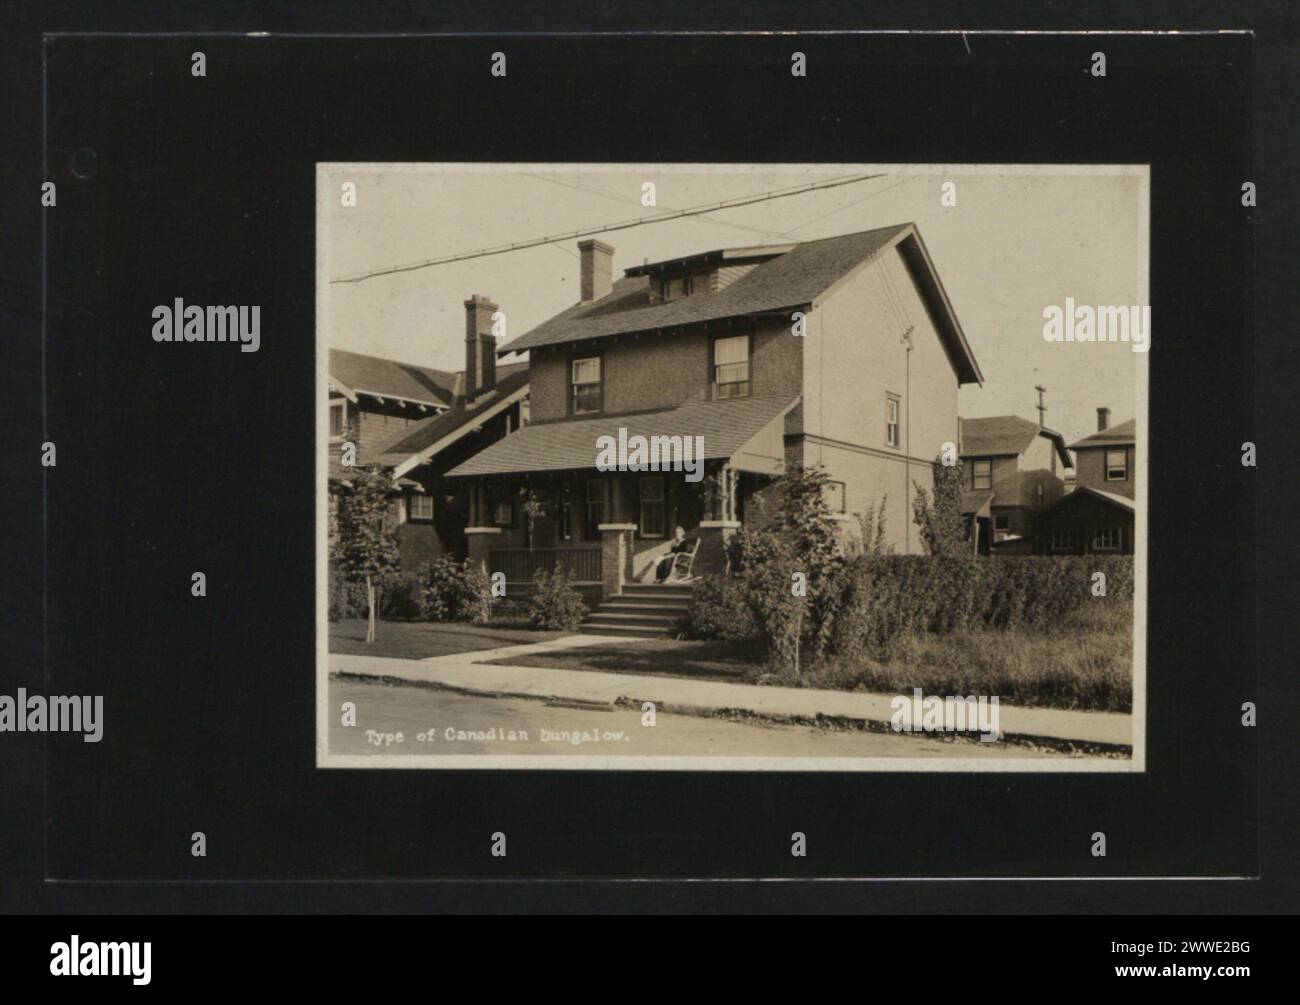 Descrizione: Tipo di bungalow canadese. Luogo: Canada Data: 1920-1929 casa, canada, casa, interni, decorazione, nazionale Foto Stock